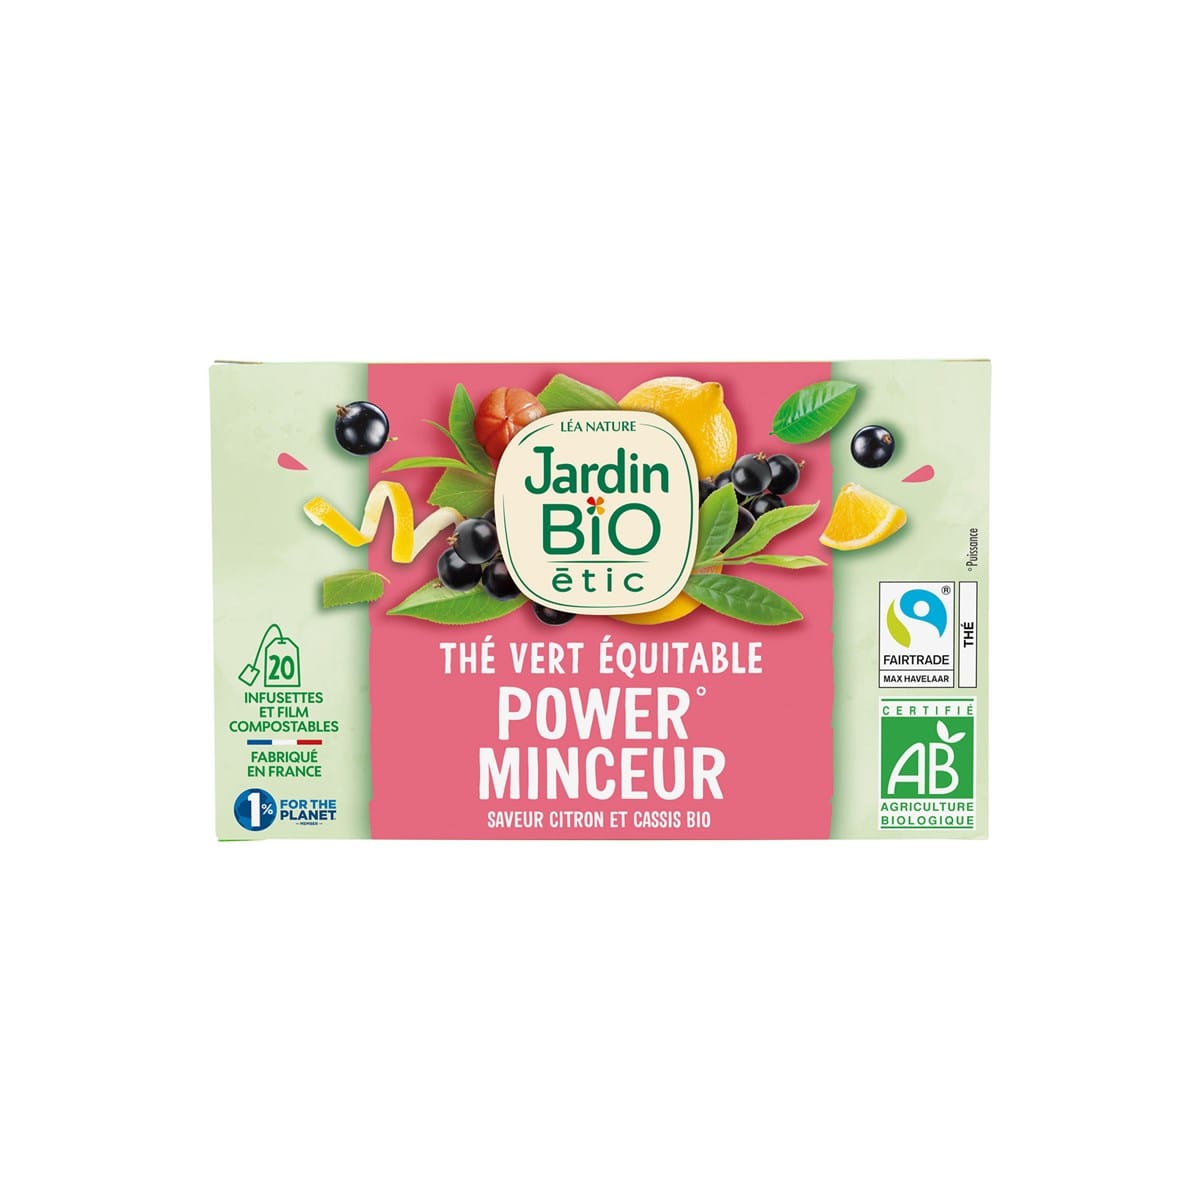 Vente Thé vert Equitable Matcha Citron - bio - Jardin BiO étic - Léa Nature  Boutique bio